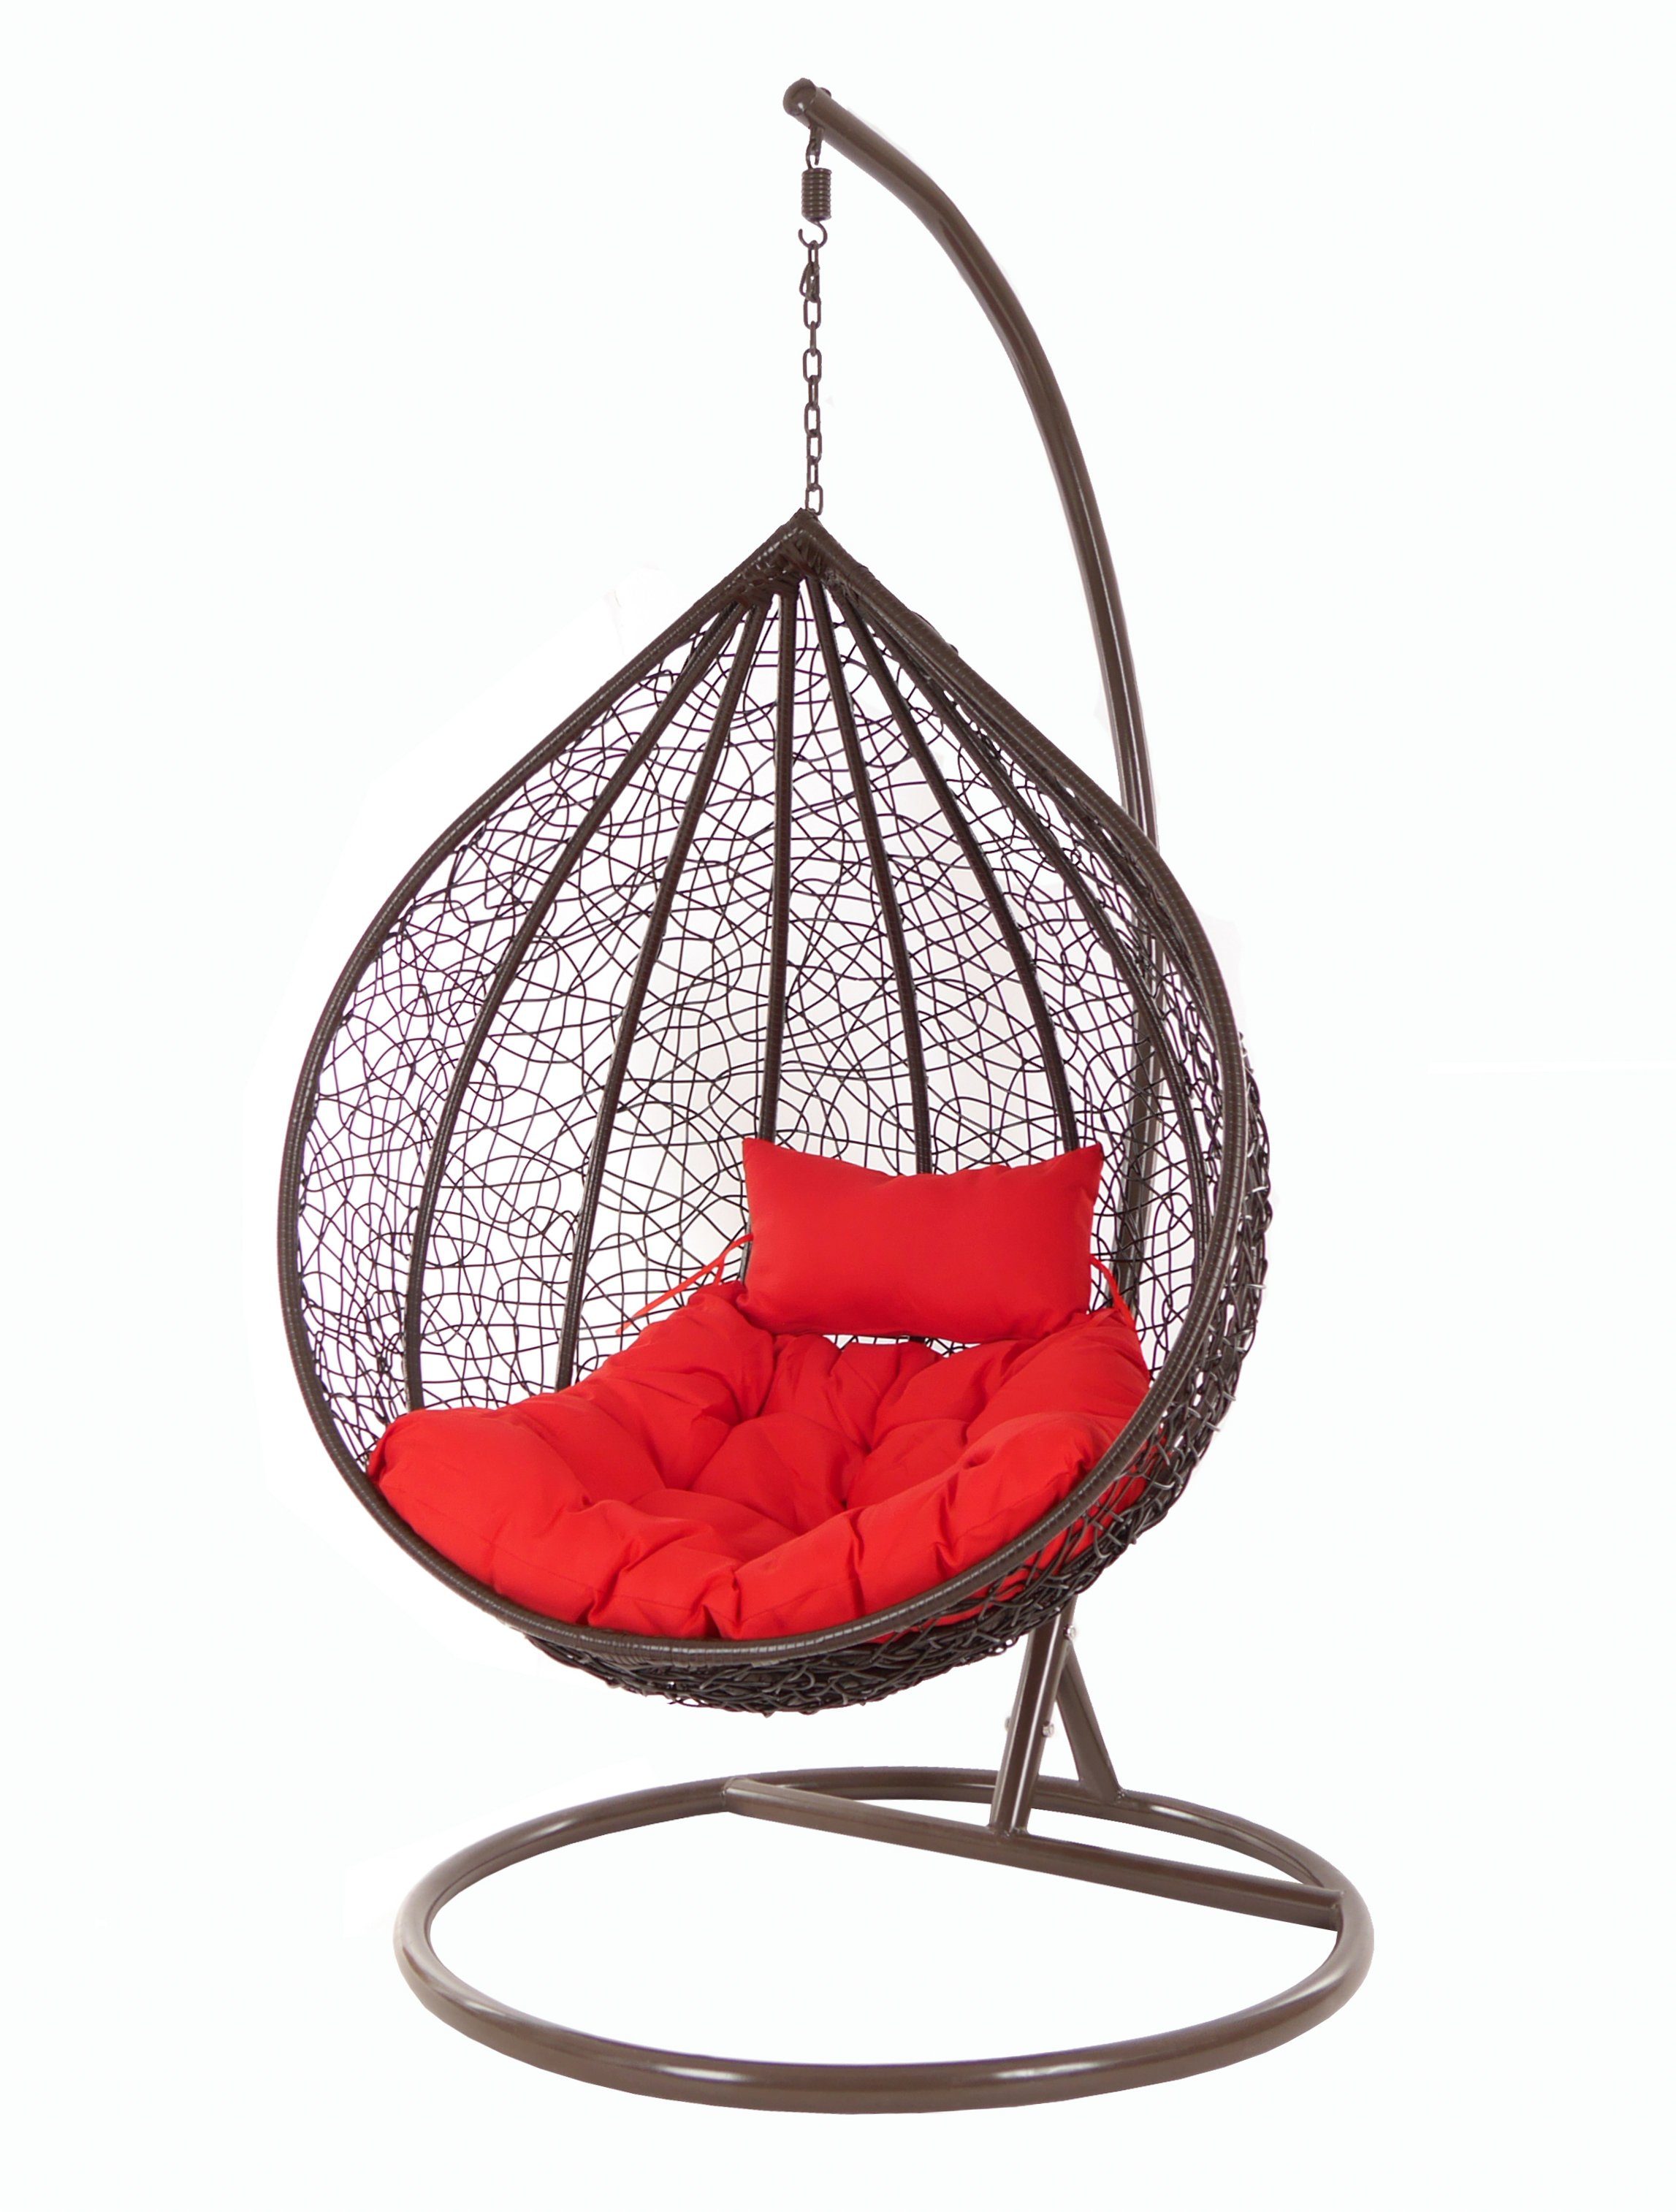 KIDEO Hängesessel Hängesessel MANACOR darkbrown, Swing Chair, Hängesessel mit Gestell und Kissen, dunkelbraun, Loungemöbel rot (3050 scarlet)